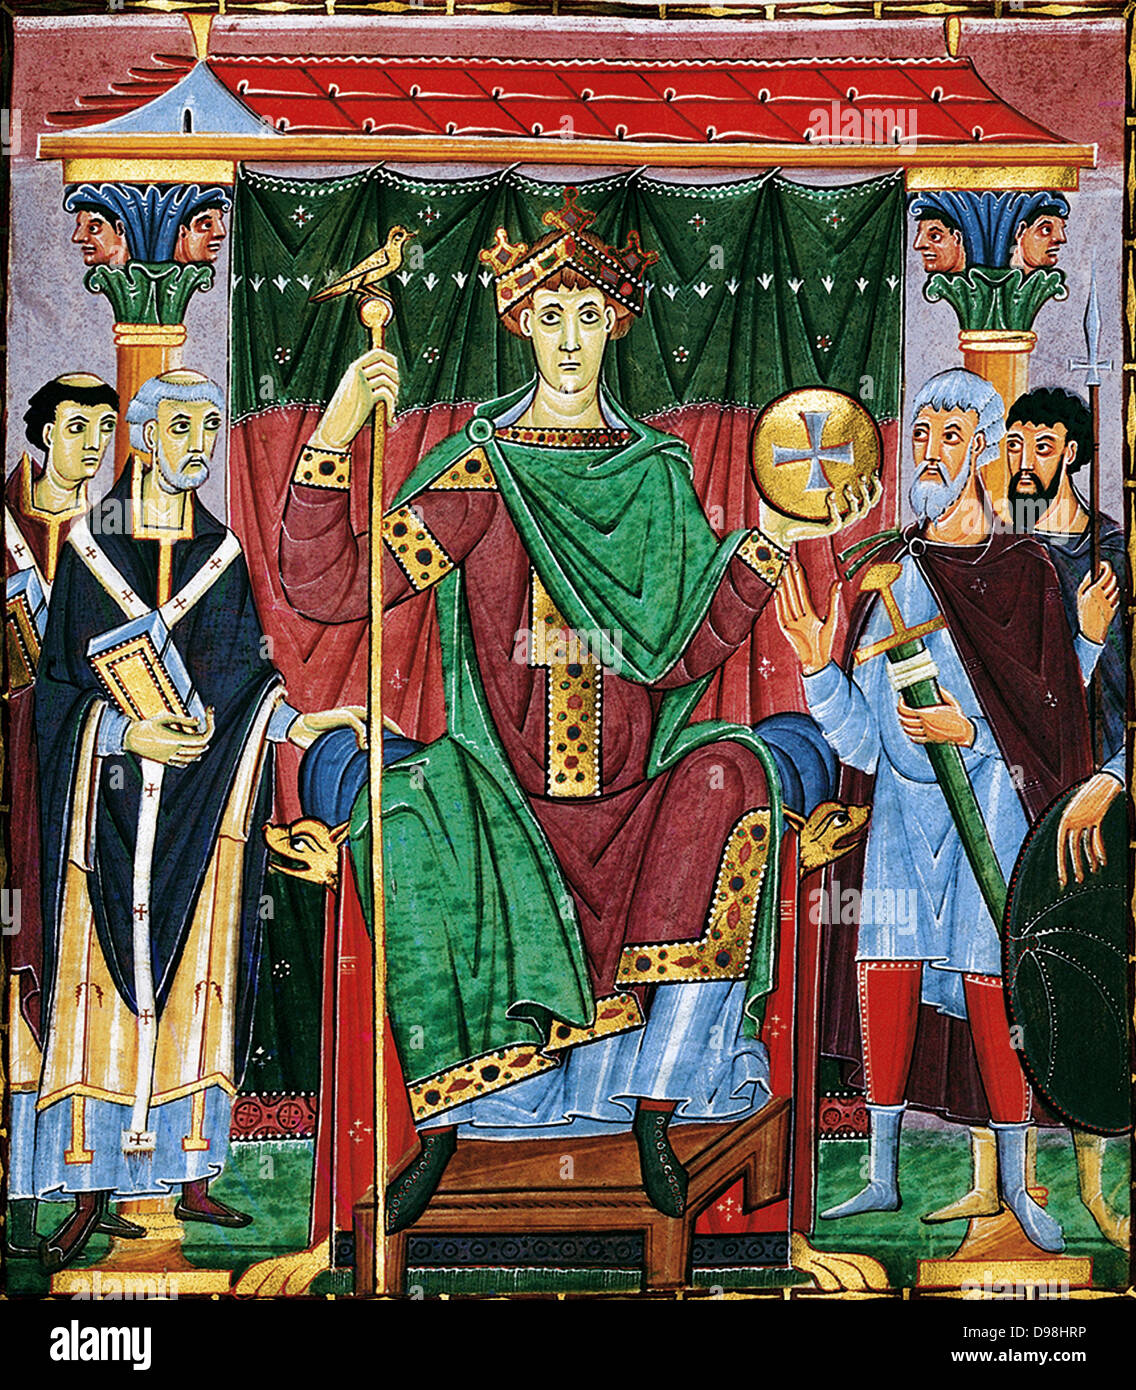 Meister der Reichenauer Schule; Ottone III dai vangeli di ottone III. Sacro Romano Imperatore regnare 21 Maggio 996 - 24 gennaio 1002. Data annuncio 1000 Foto Stock